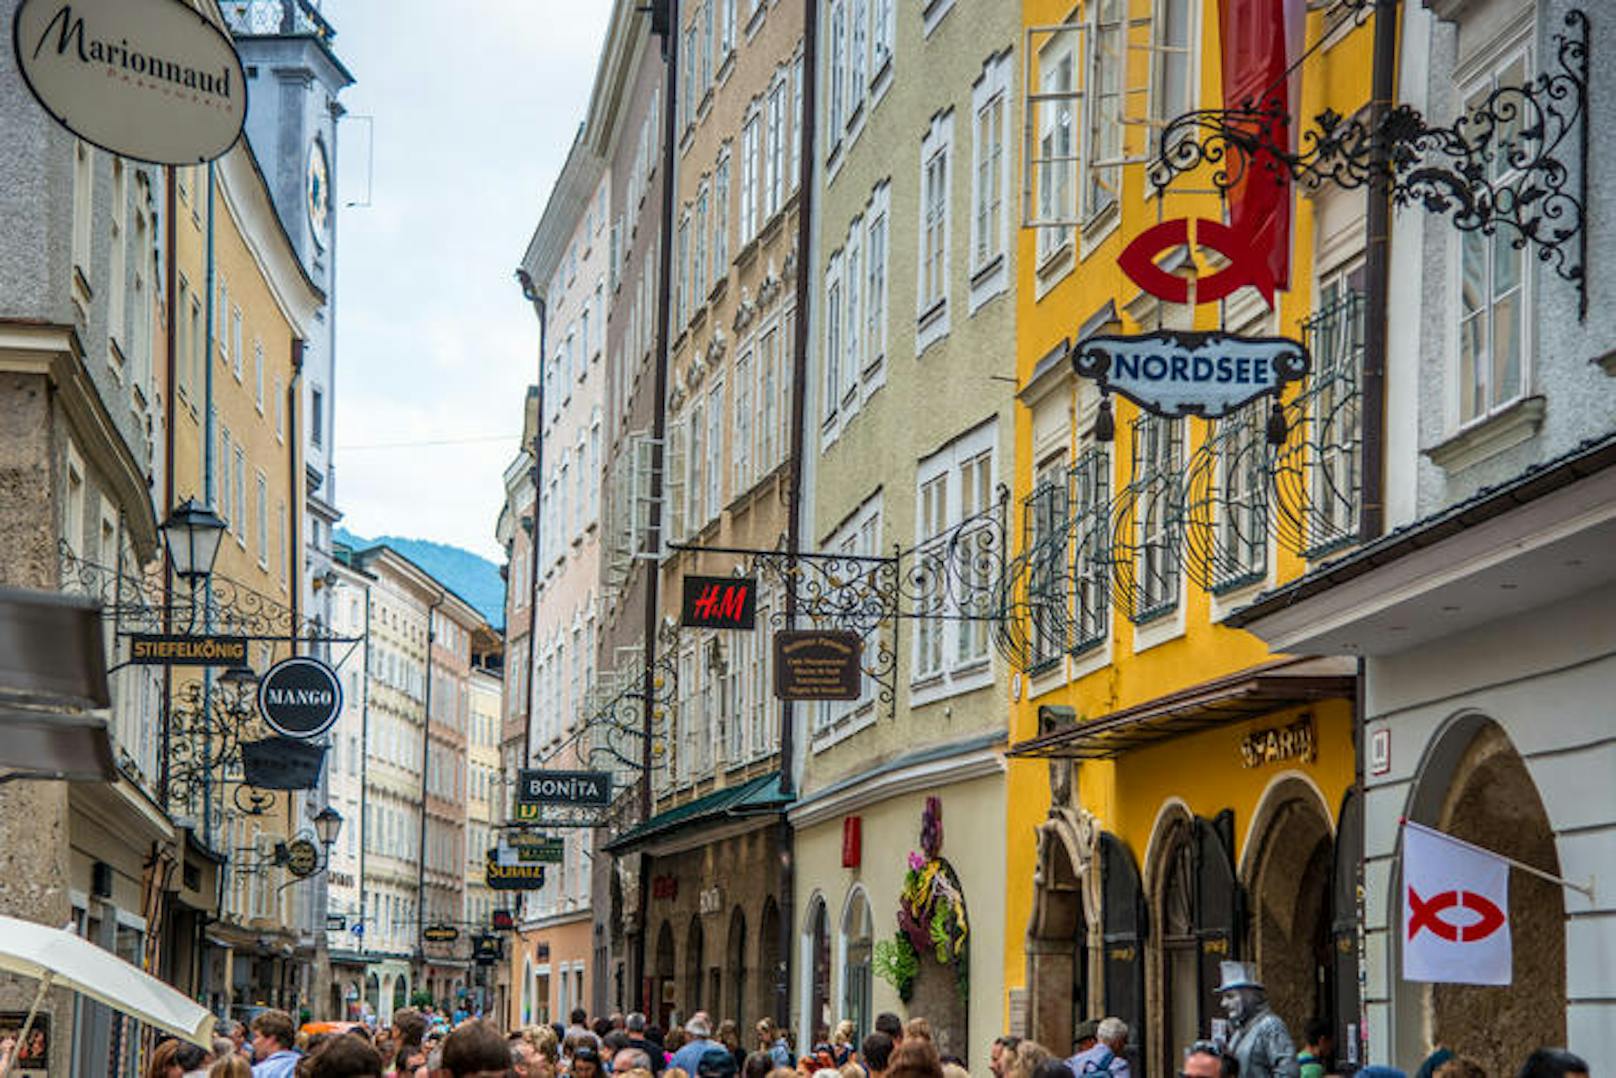 Impressionen aus dem Bundesland Salzburg.